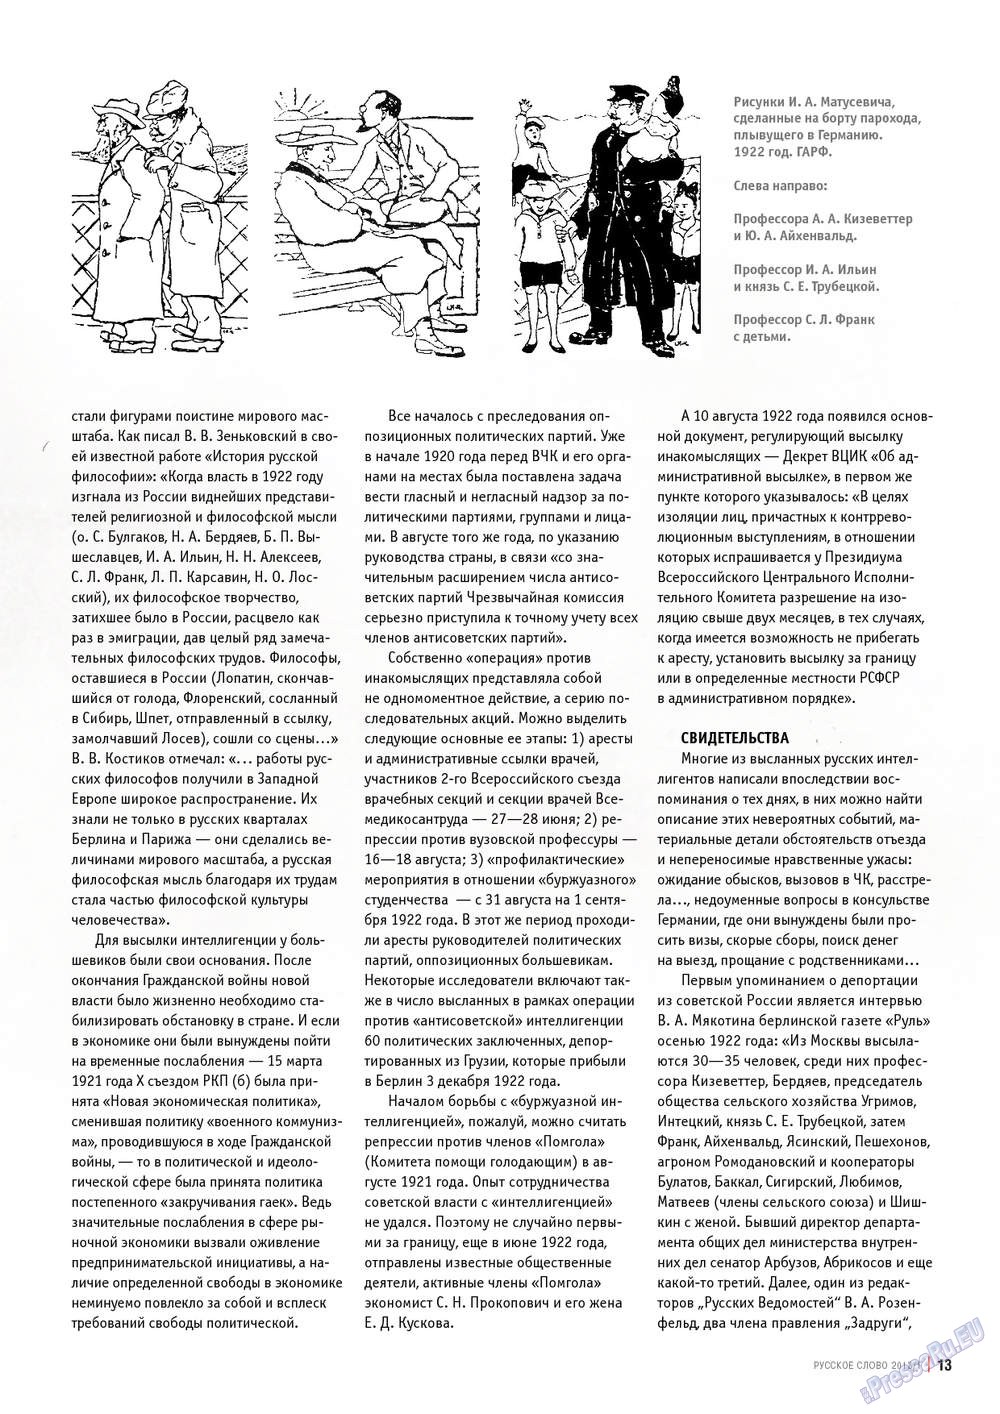 Русское слово, журнал. 2013 №1 стр.13